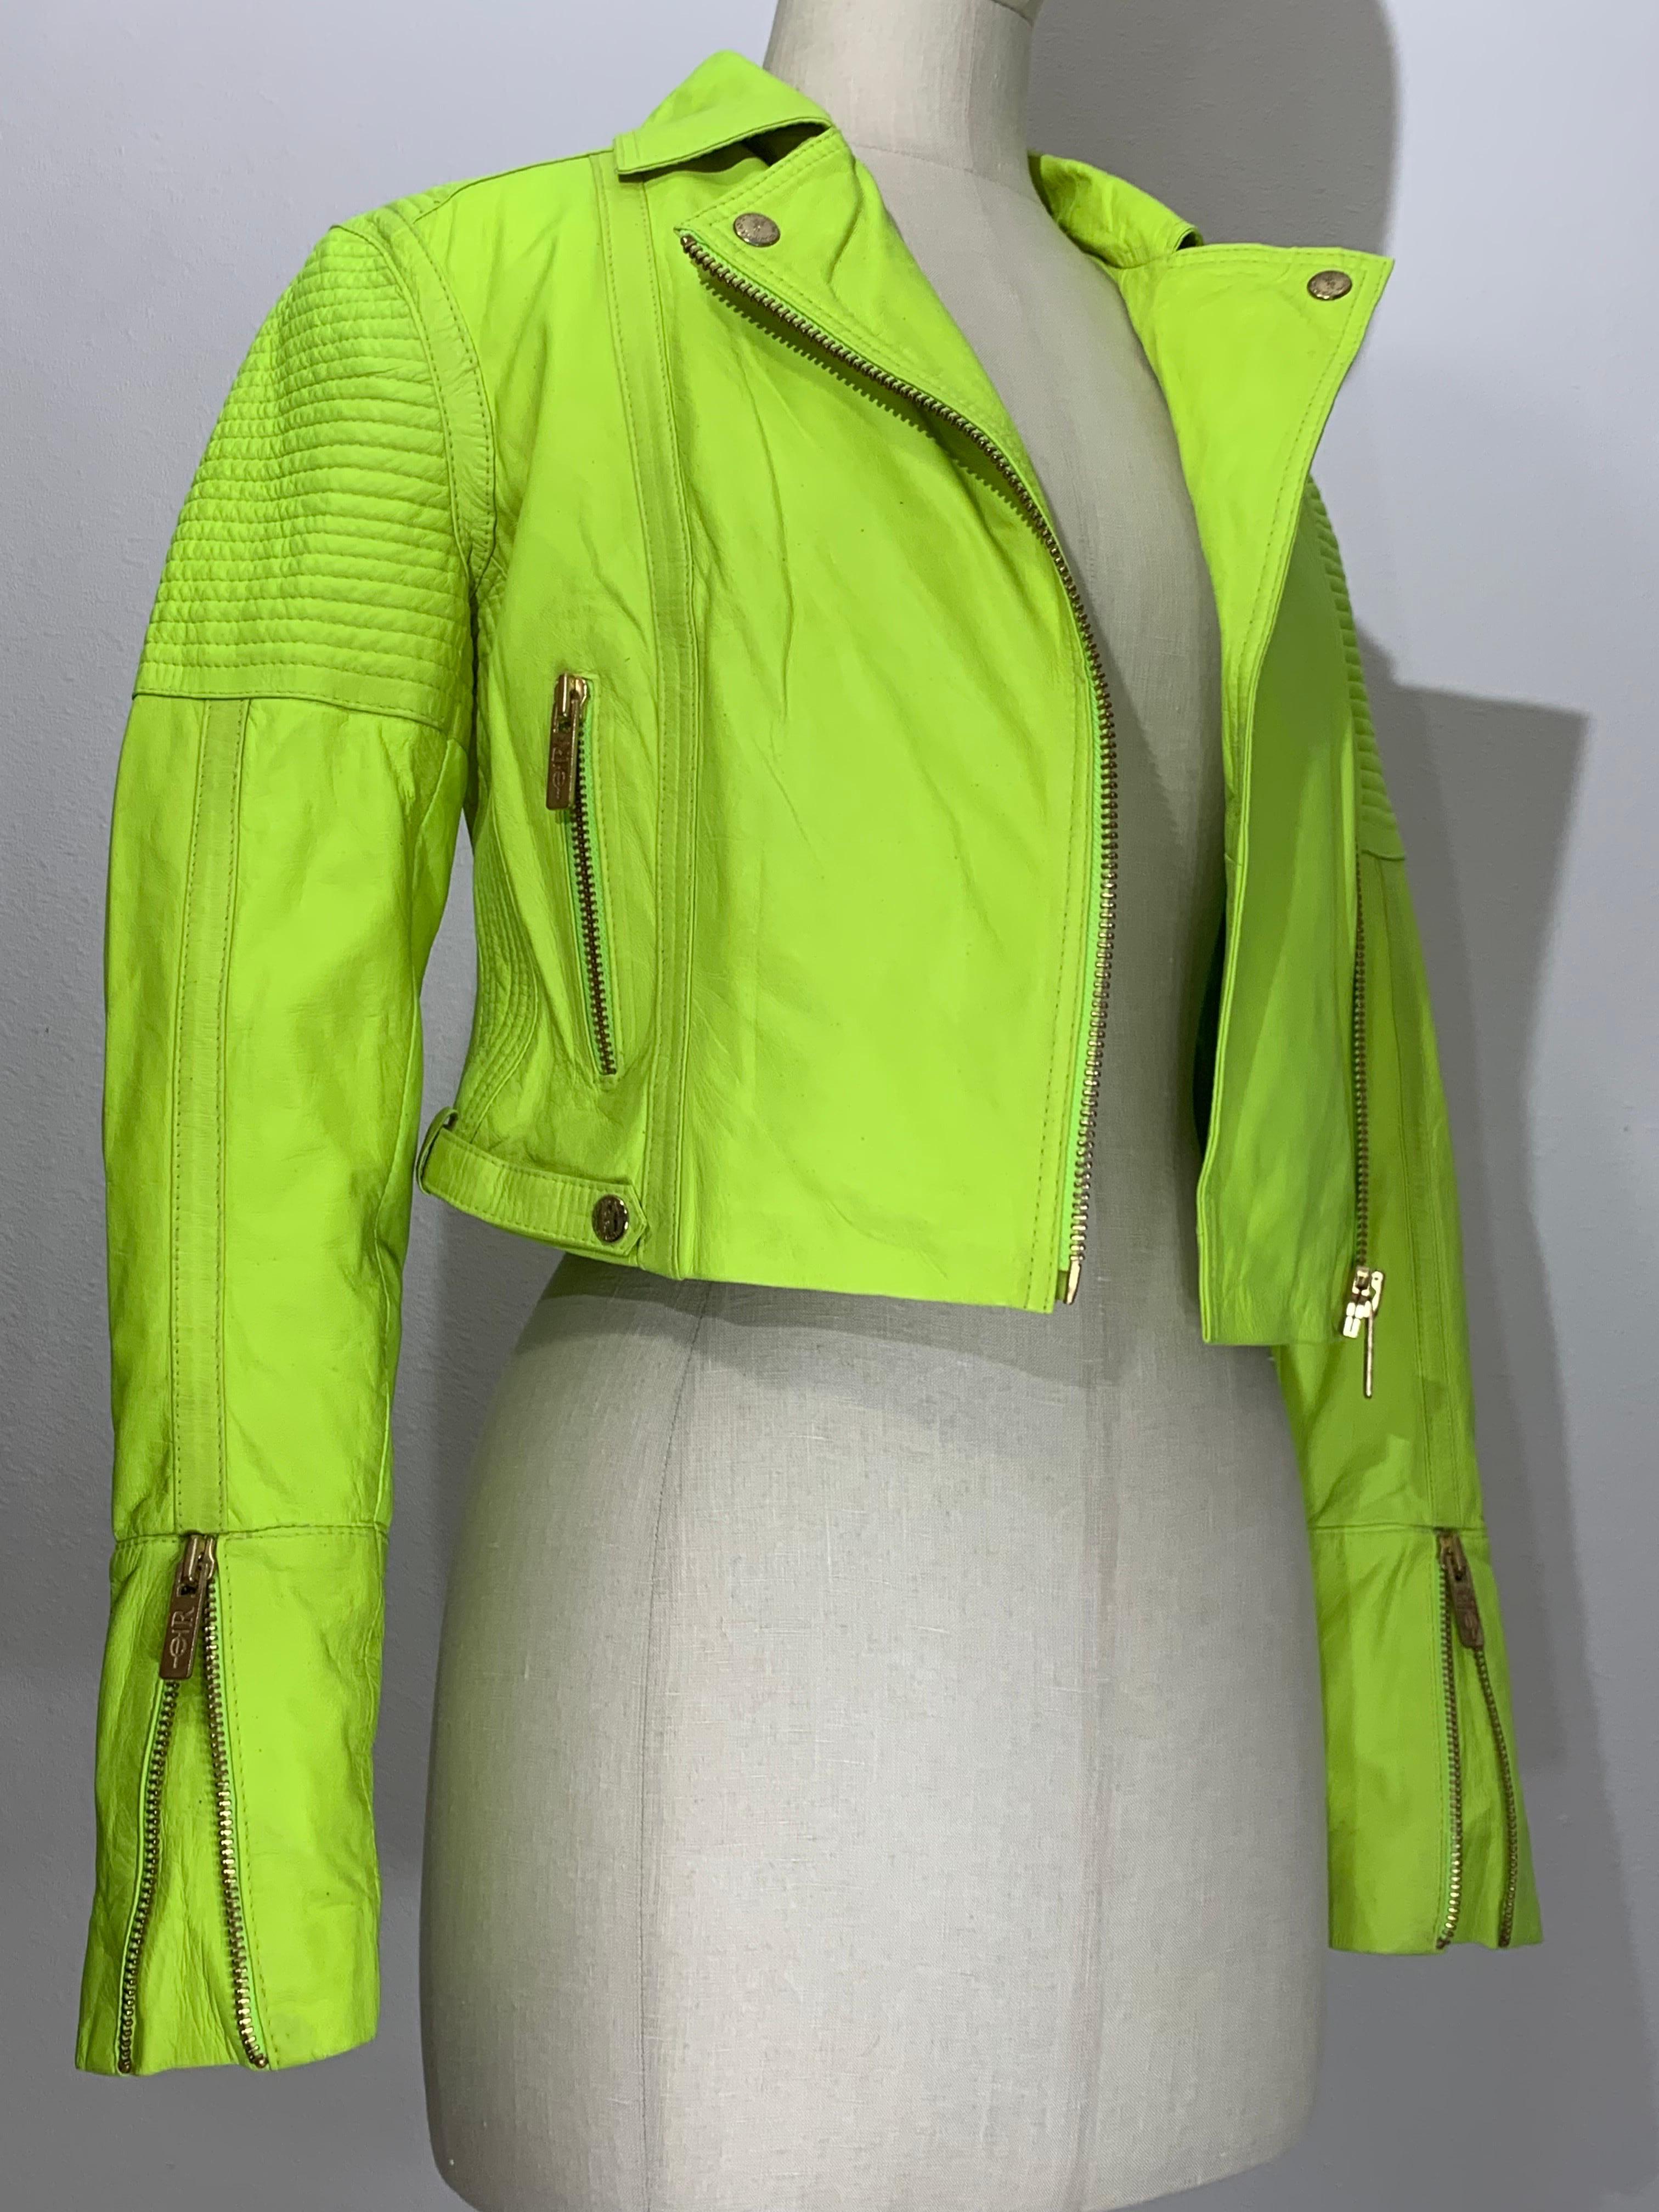 Neongrüne Lederjacke im Motorrad-Stil mit gesteppten Schultern und Reißverschlüssen:  Asymmetrischer Reißverschluss, Schlitztasche mit Reißverschluss vorne und spitz zulaufende Ärmel mit Reißverschluss. Die Schulterpartien sind für einen